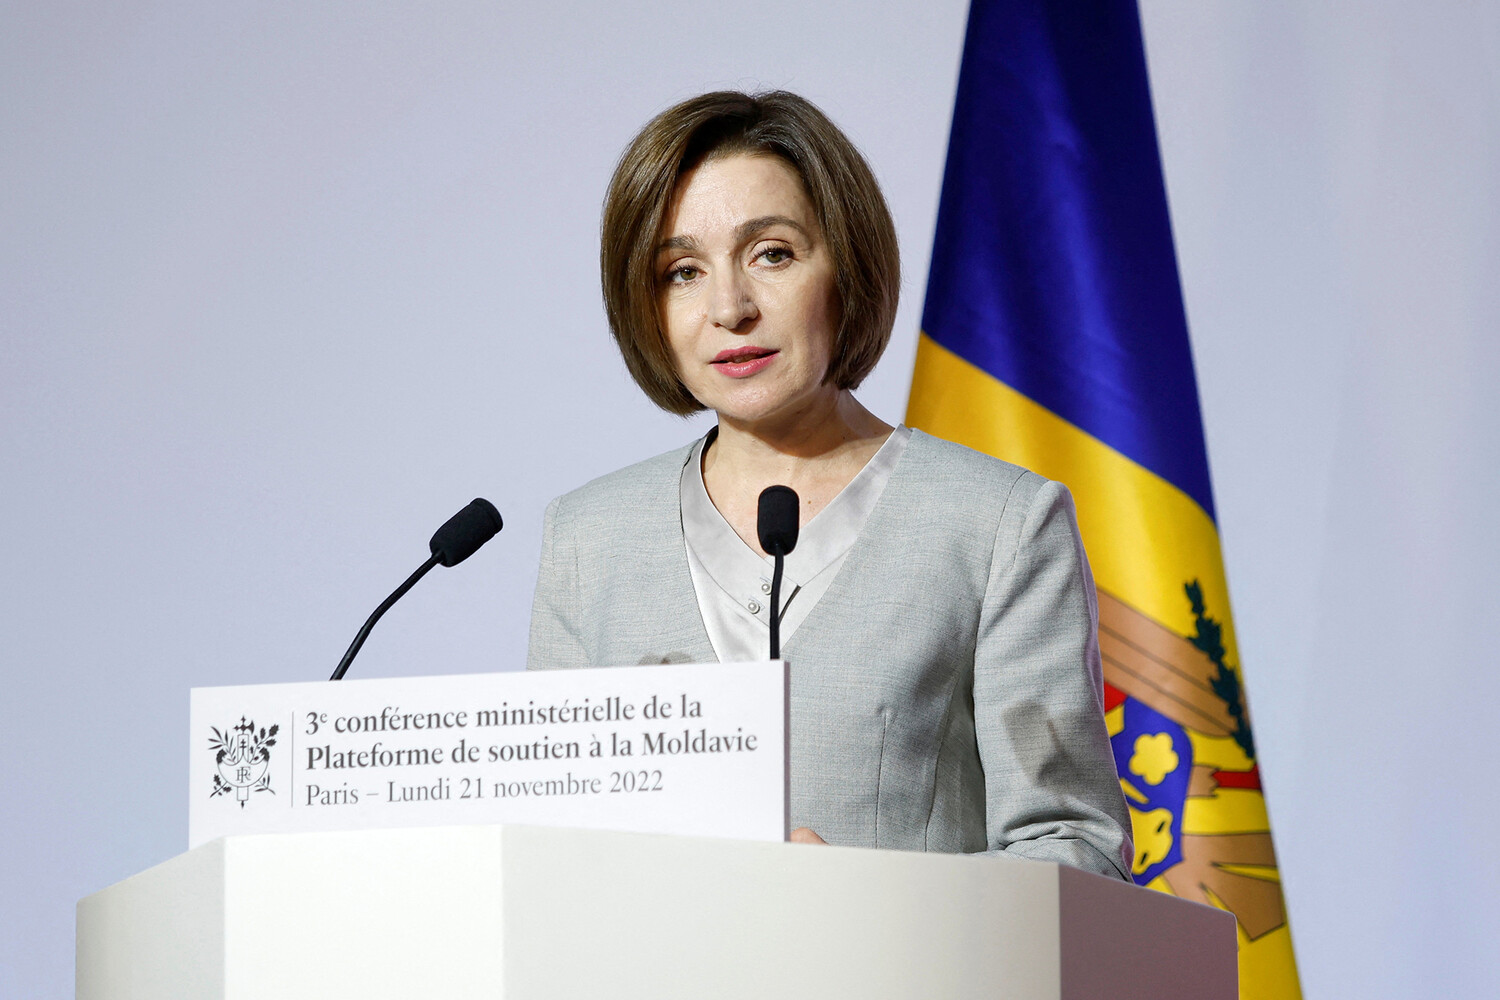 Bihoreanul: президент Молдавии Cанду приехала в Румынию с «непубличным» визитом